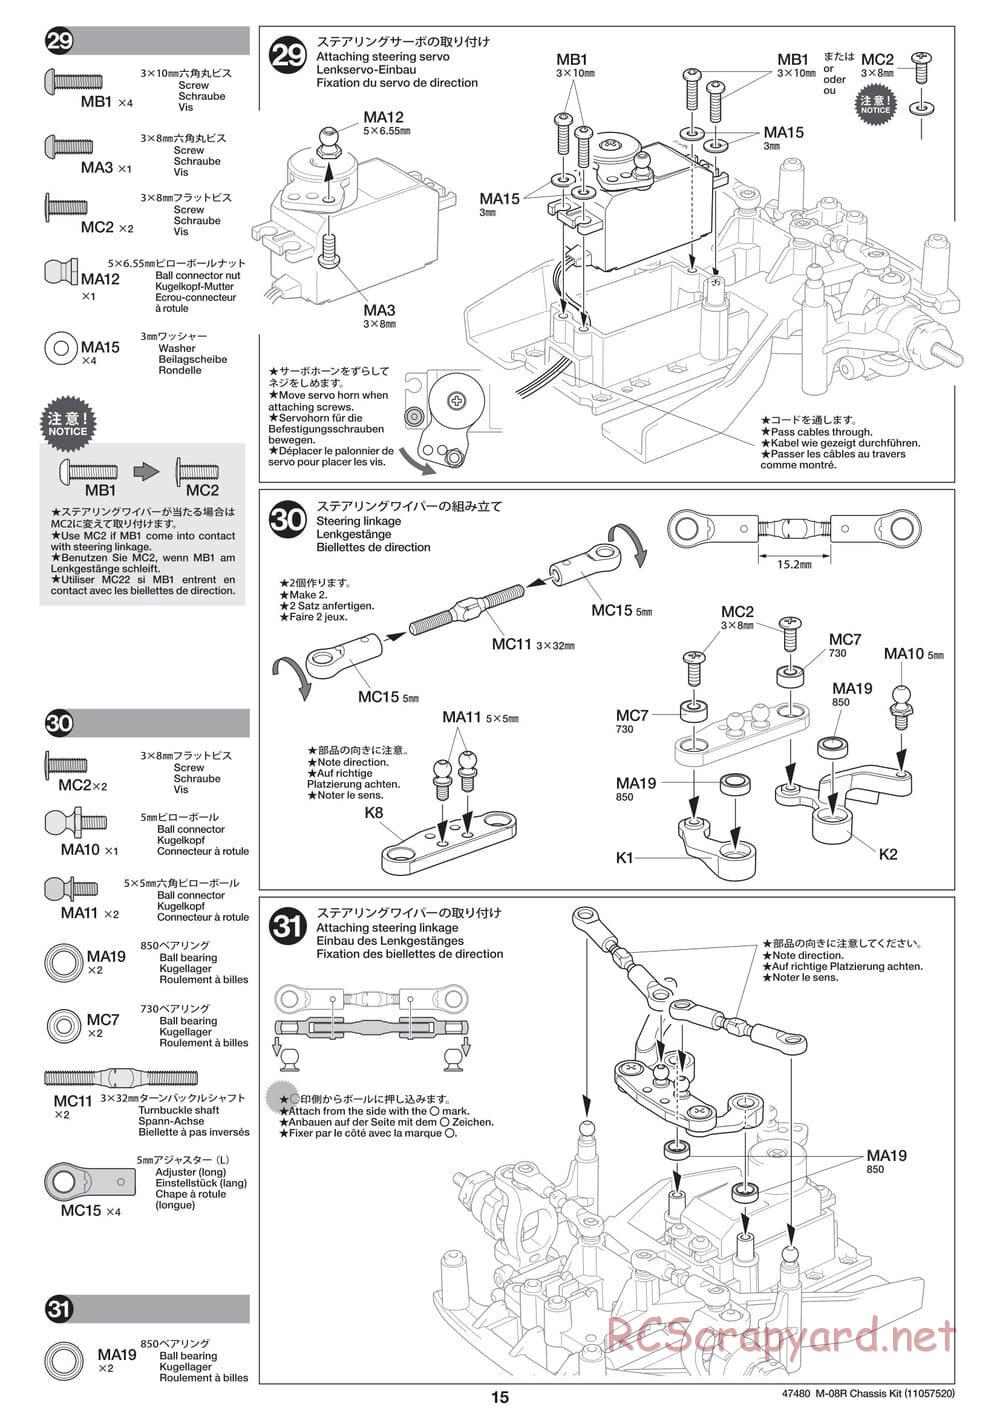 Tamiya - M-08R Chassis - Manual - Page 15